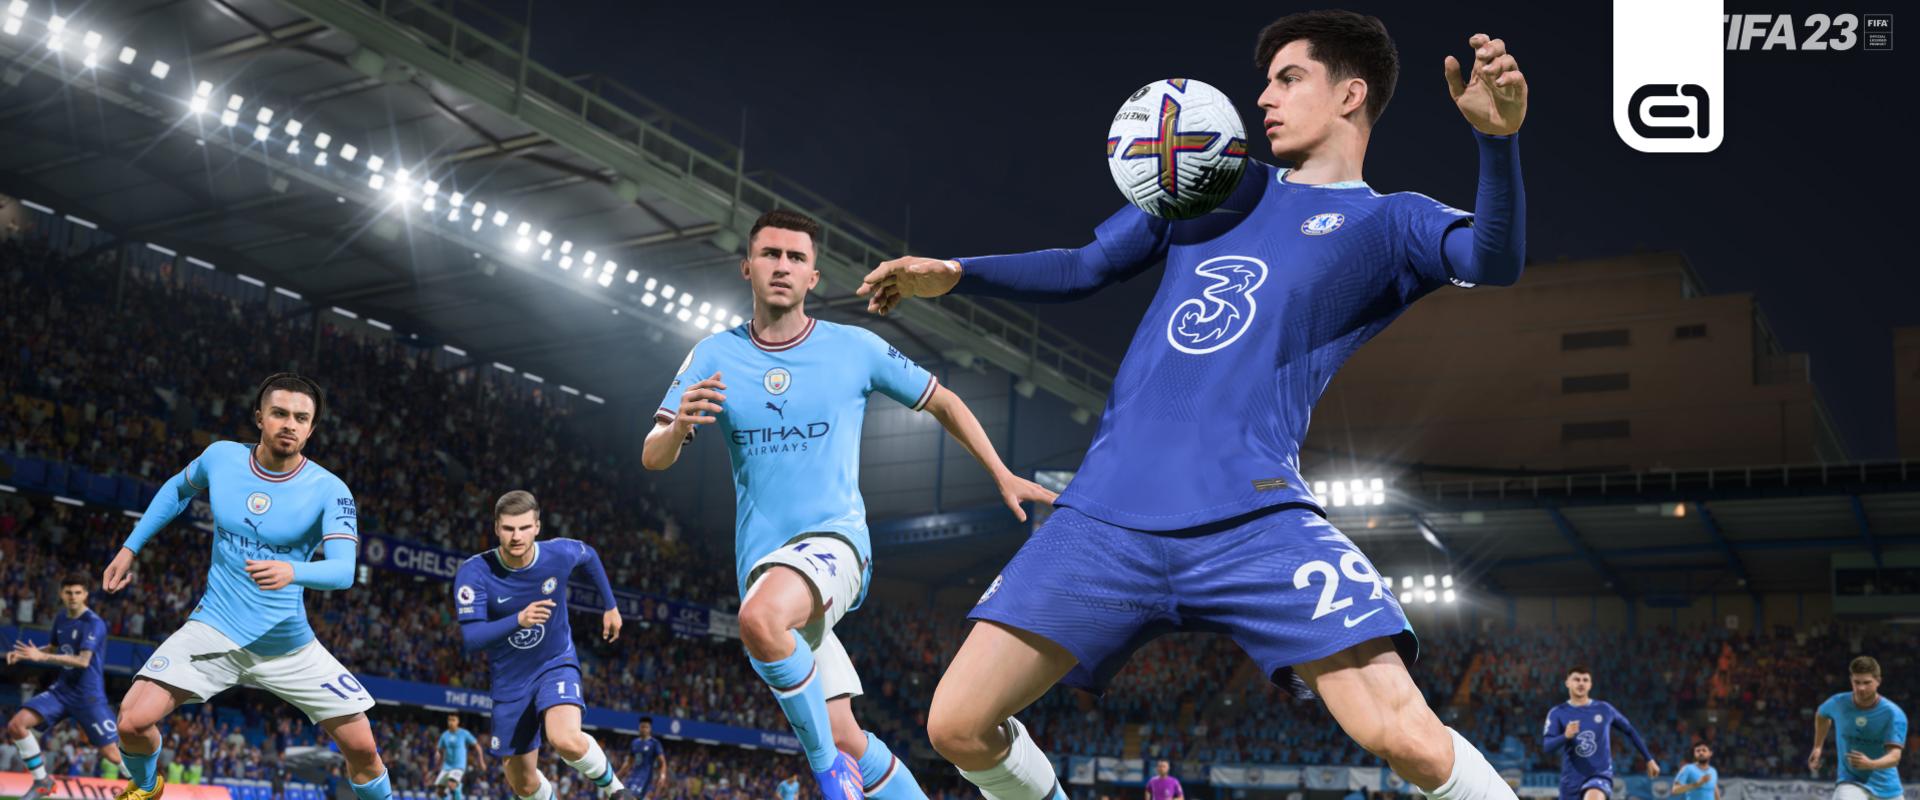 FIFA 23: Nem örülhetnek a játékosok, emel az EA az árain